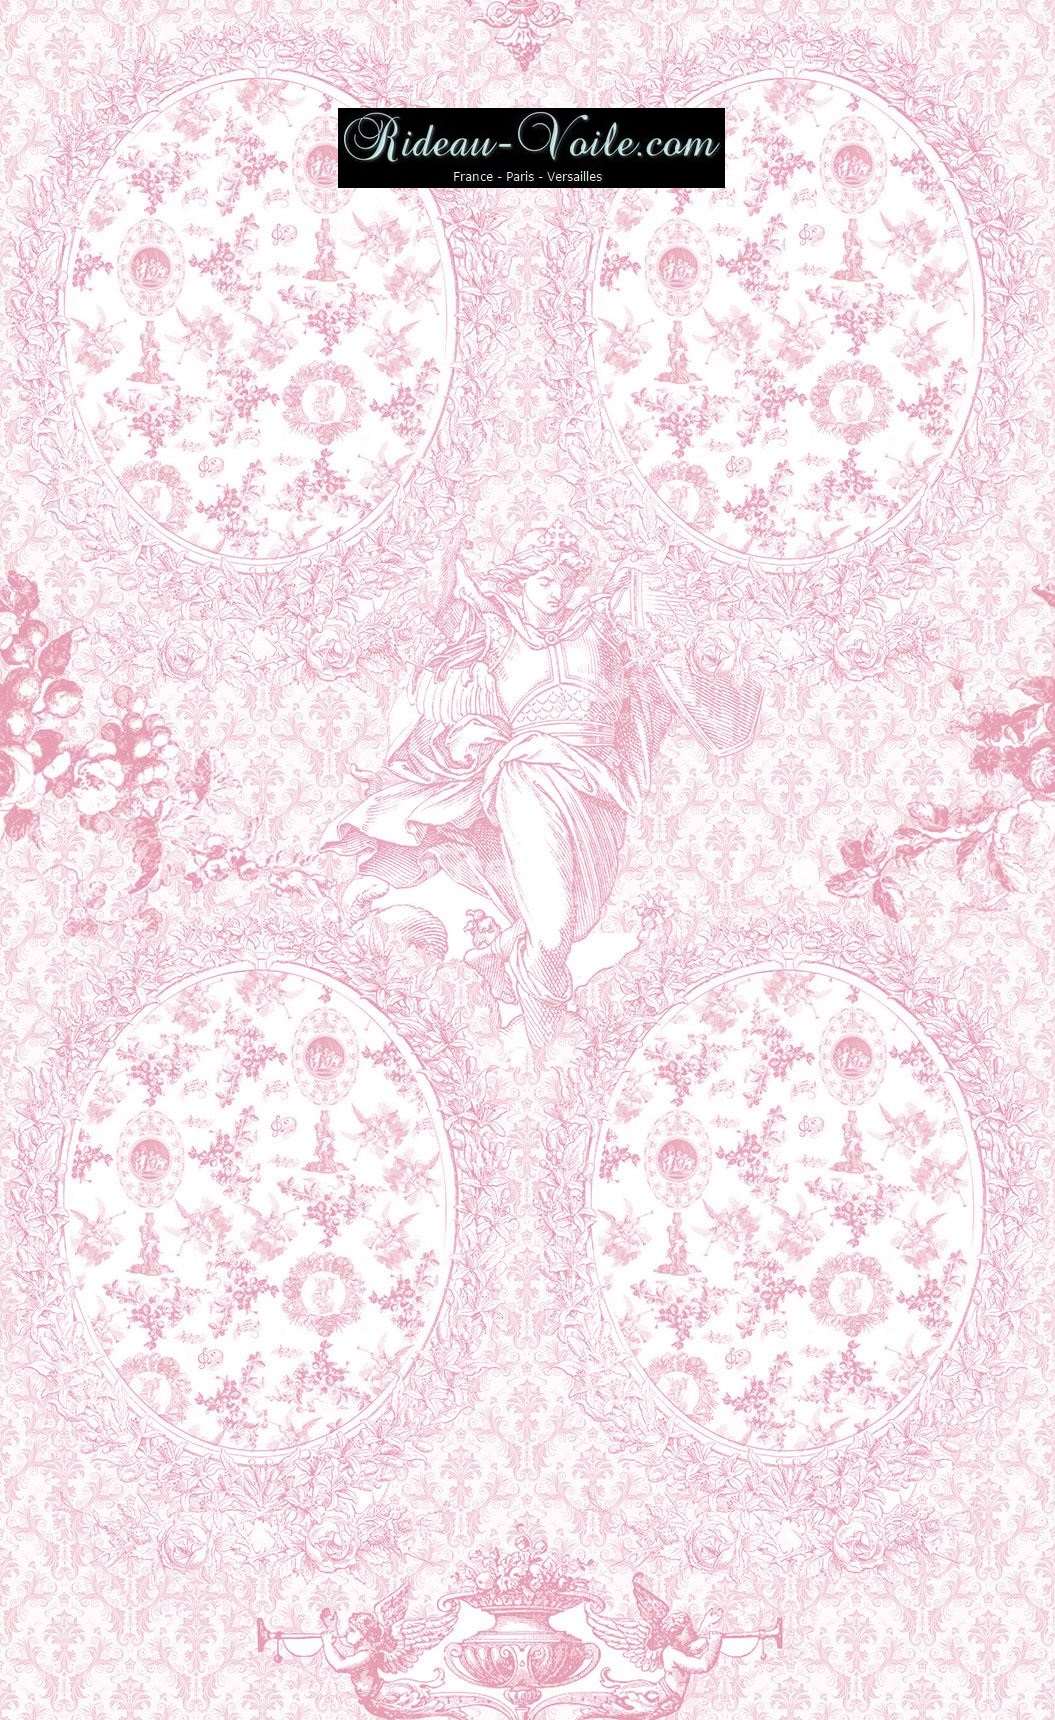 Toile de Jouy tissu ameublement motif imprimé décoration tapisserie au mètre confection sur mesure rose